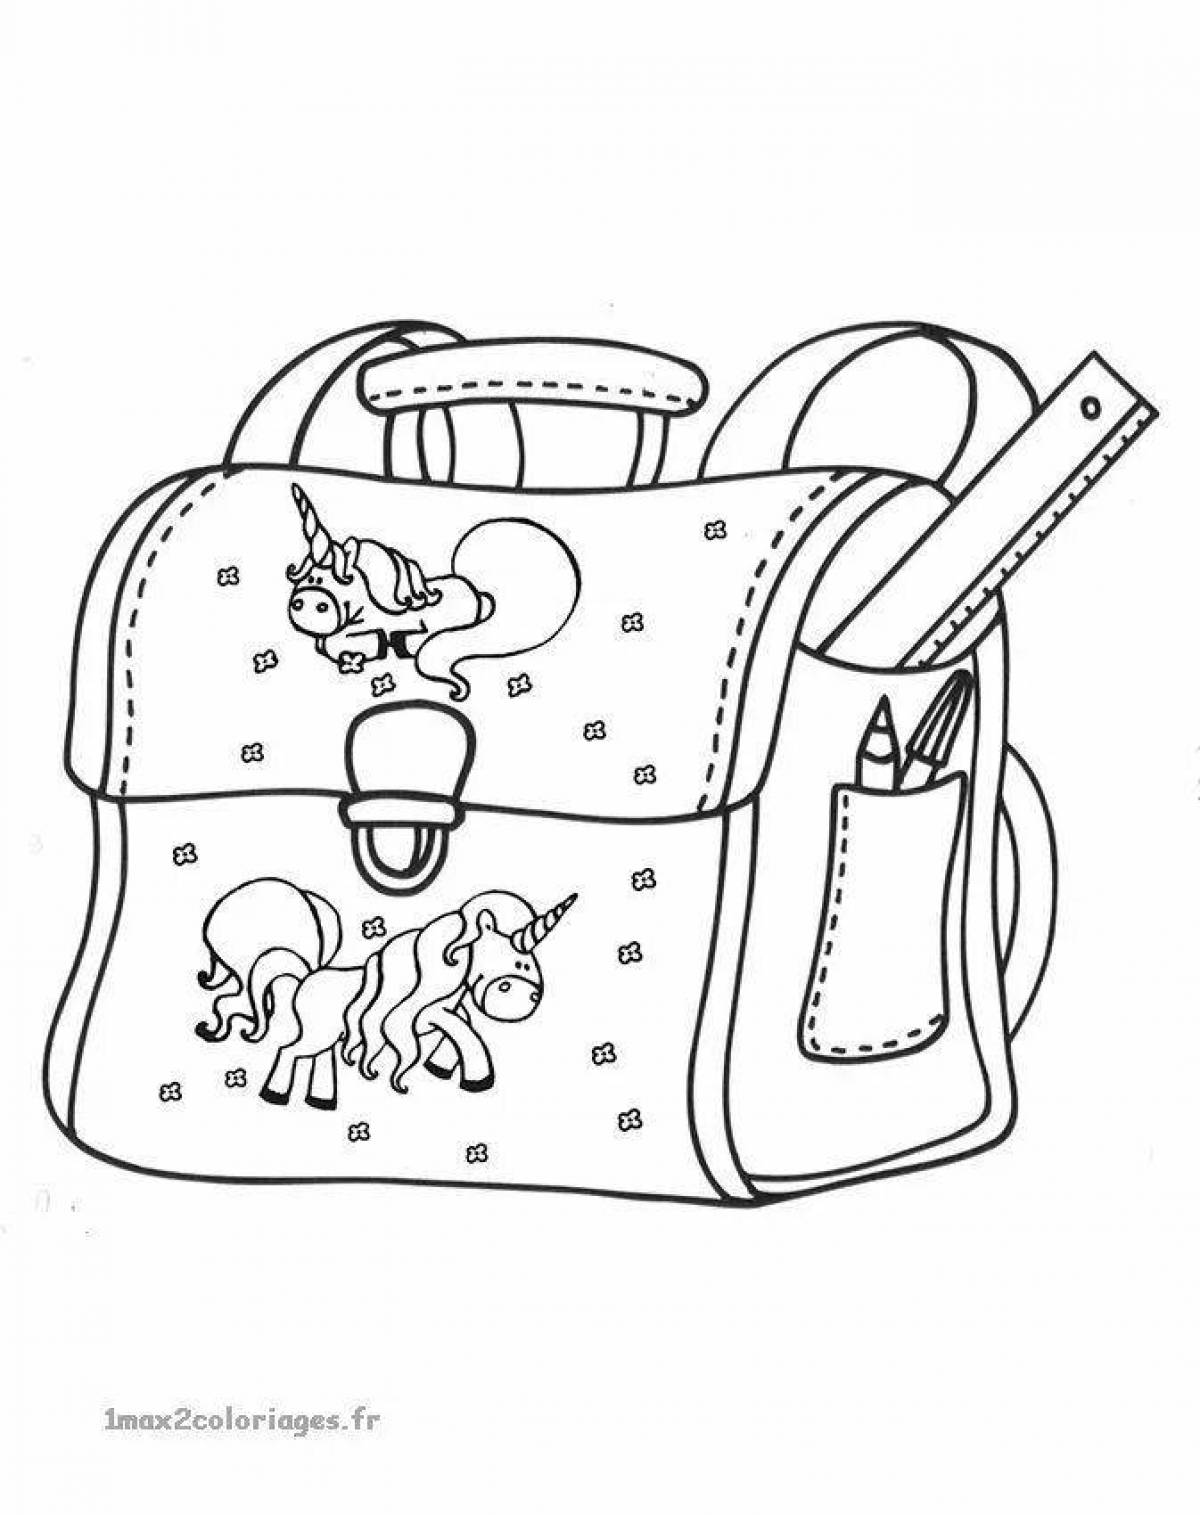 Выдающаяся раскраска рюкзака для детей